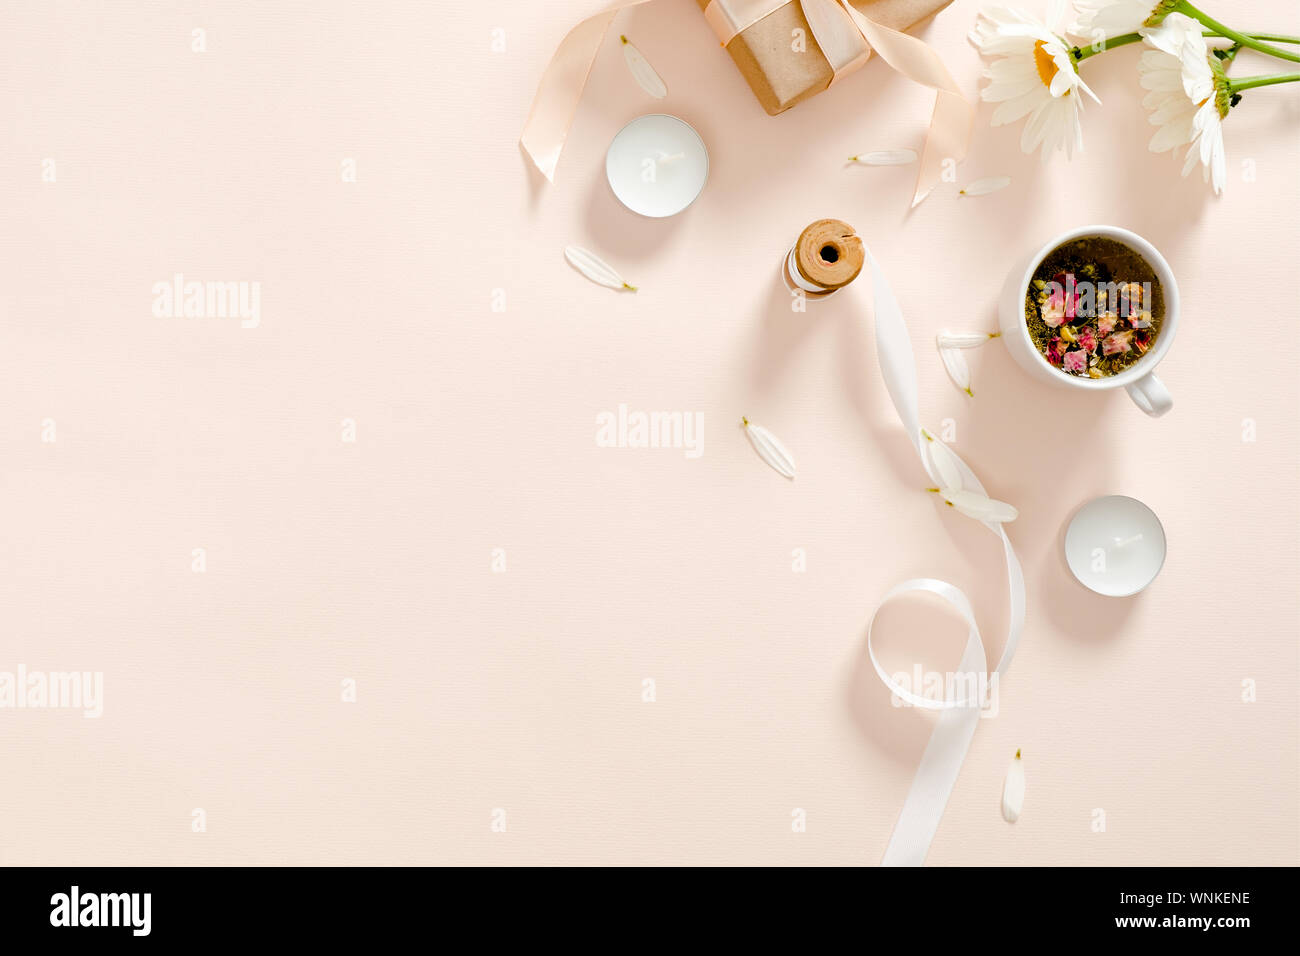 Kräutertee, Kerzen, Band, Geschenkbox, Kamille Blüte Pastell rosa Hintergrund. Minimale flach Stil Zusammensetzung, Ansicht von oben, Overhead. Stockfoto